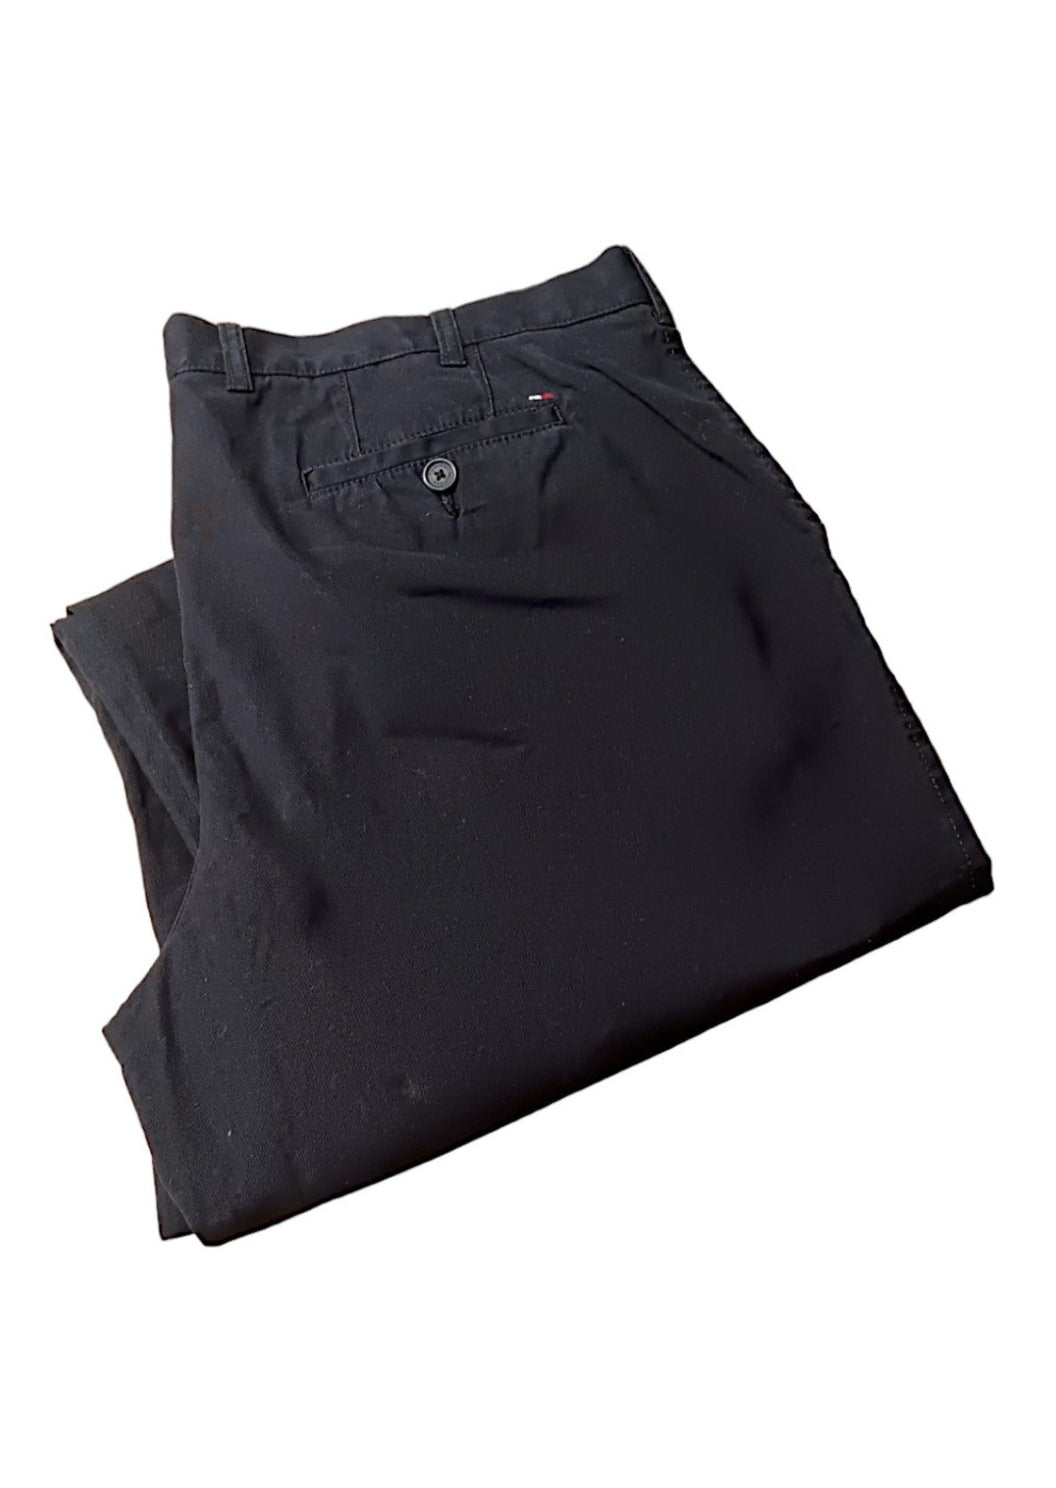 Aνδρικό Παντελόνι TOMMY HILFIGER σε Μαύρο χρώμα (Νο 42/30 - 2XL/3XL)